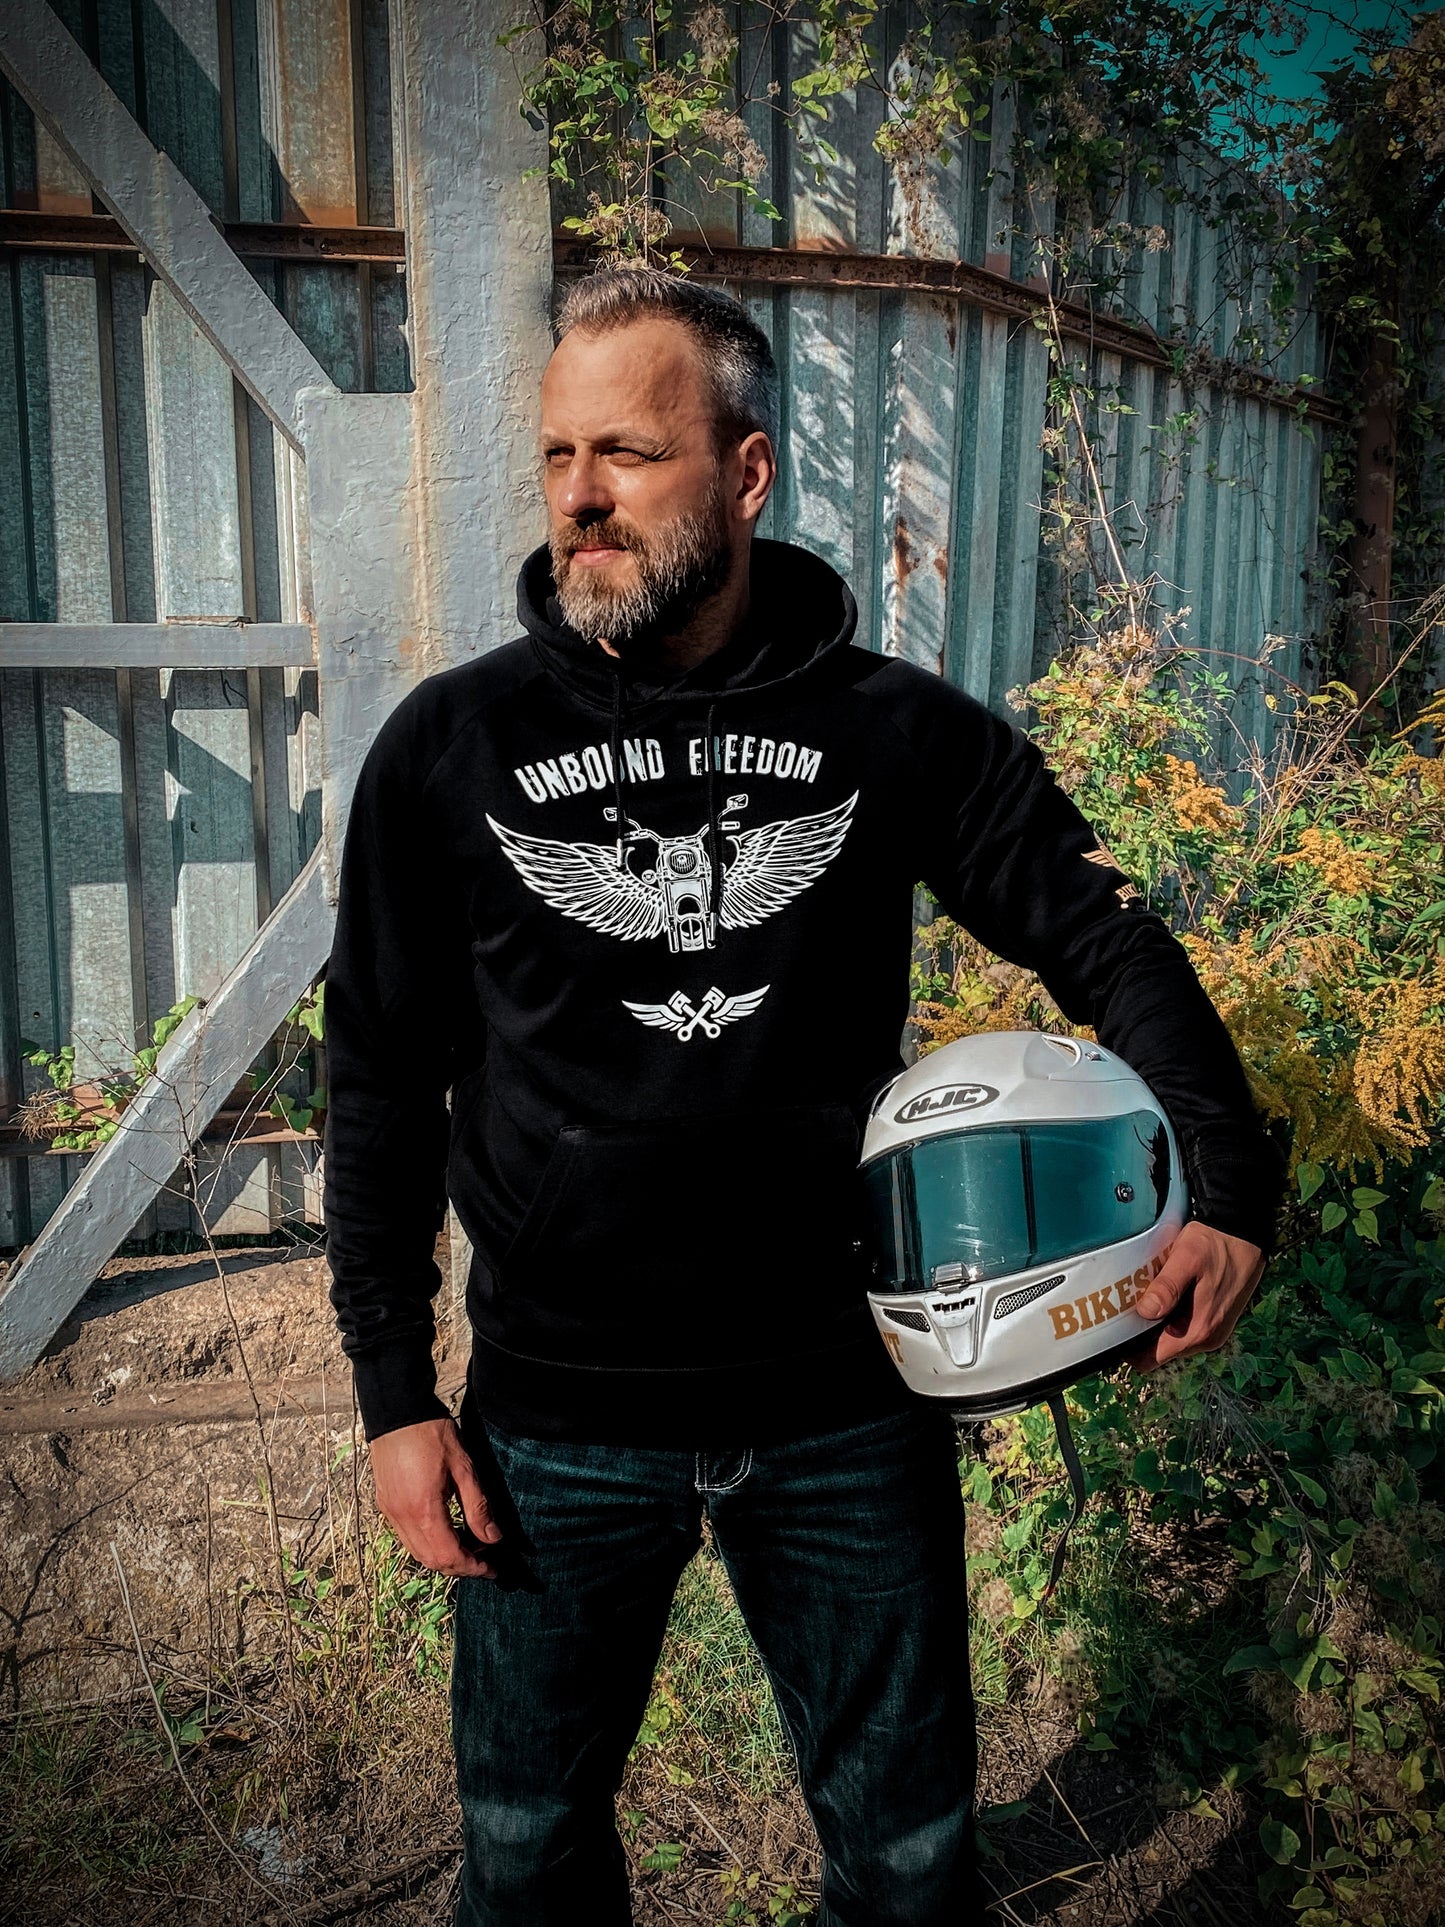 Sweatshirt Motorrad schwarz - Unbound Freedom